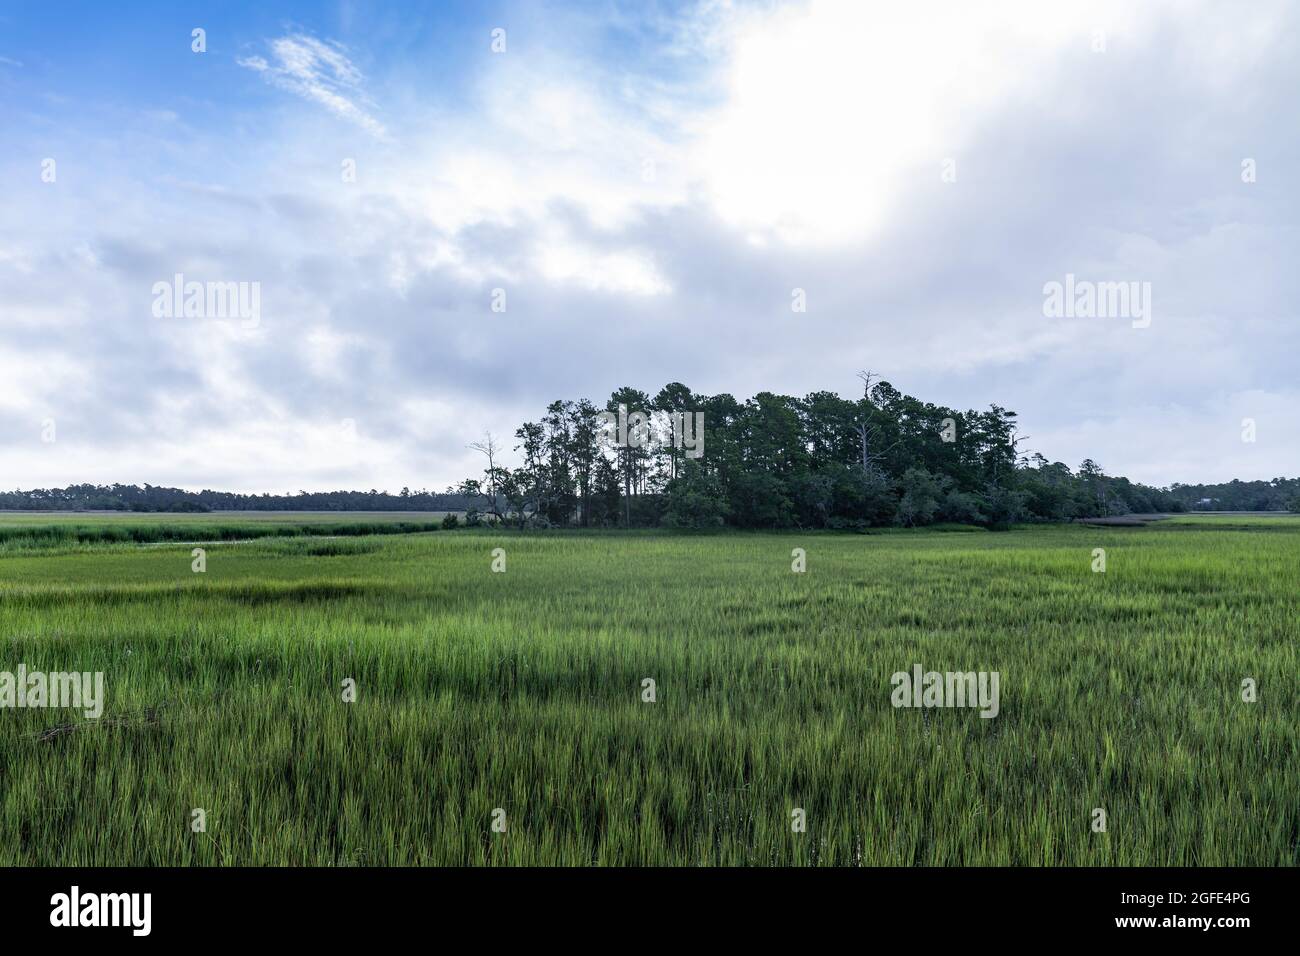 Blick auf eine Insel mit Bäumen in einem grasbewachsenen Salzsumpfgebiet, Mount Pleasant South Carolina, horizontaler Aspekt Stockfoto